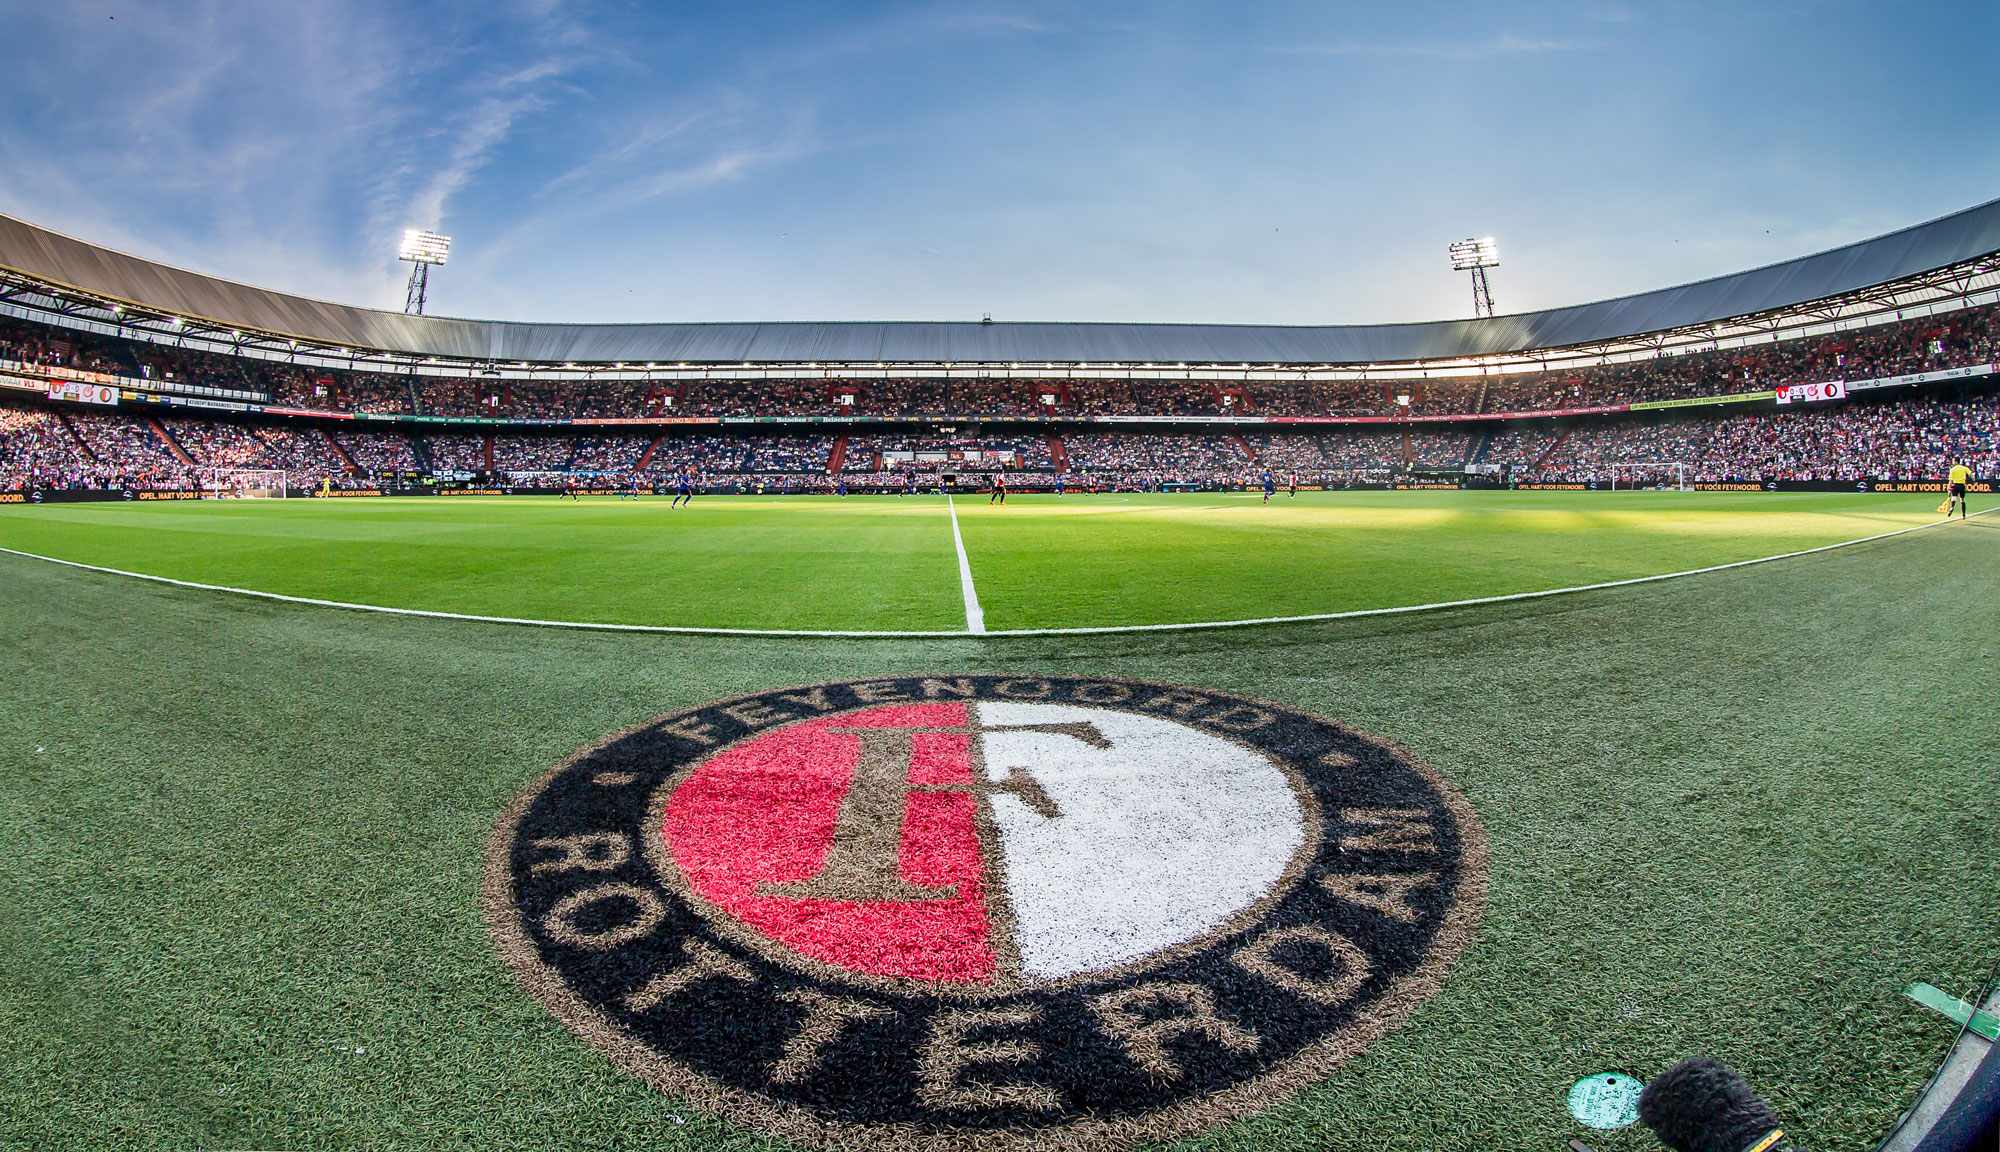 Op donderdag 28 april heeft Feyenoord de wedstrijd tegen Olympique Marseille gewonnen met 3-2.